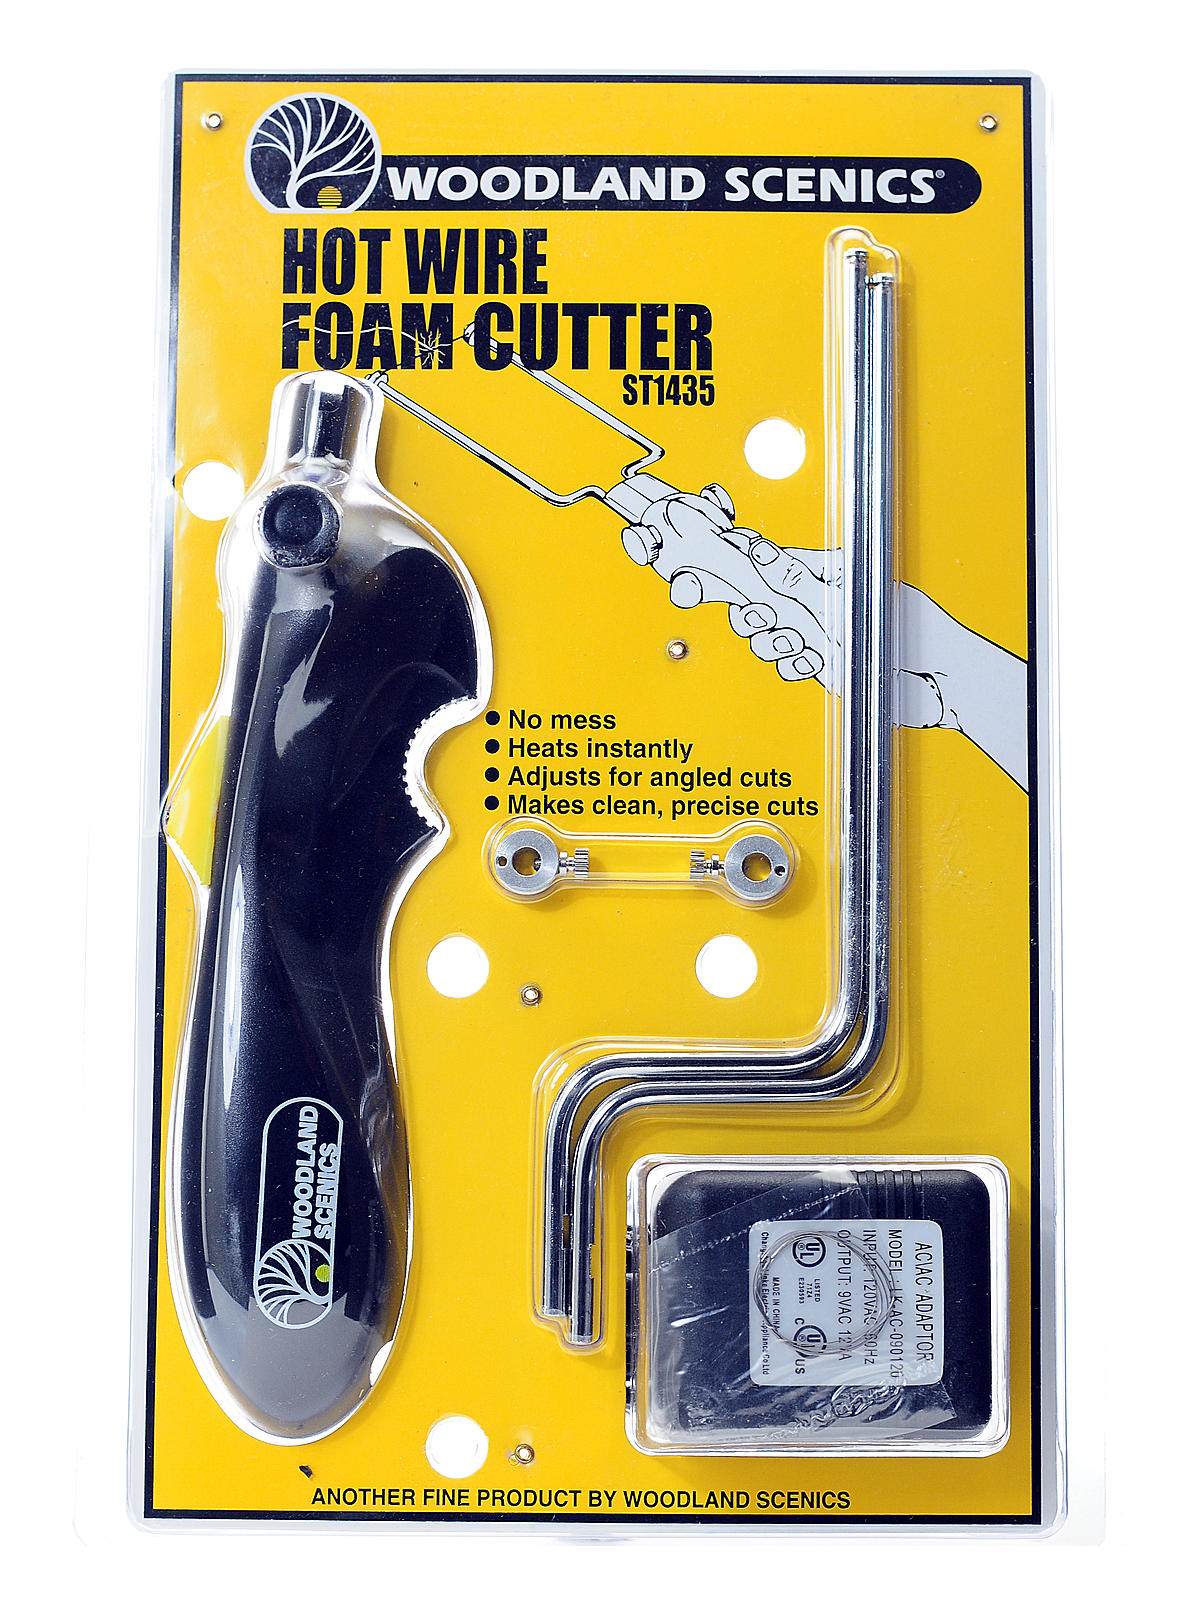 Hot Wire Foam Cutter And Accessories Hot Wire Foam Cutter